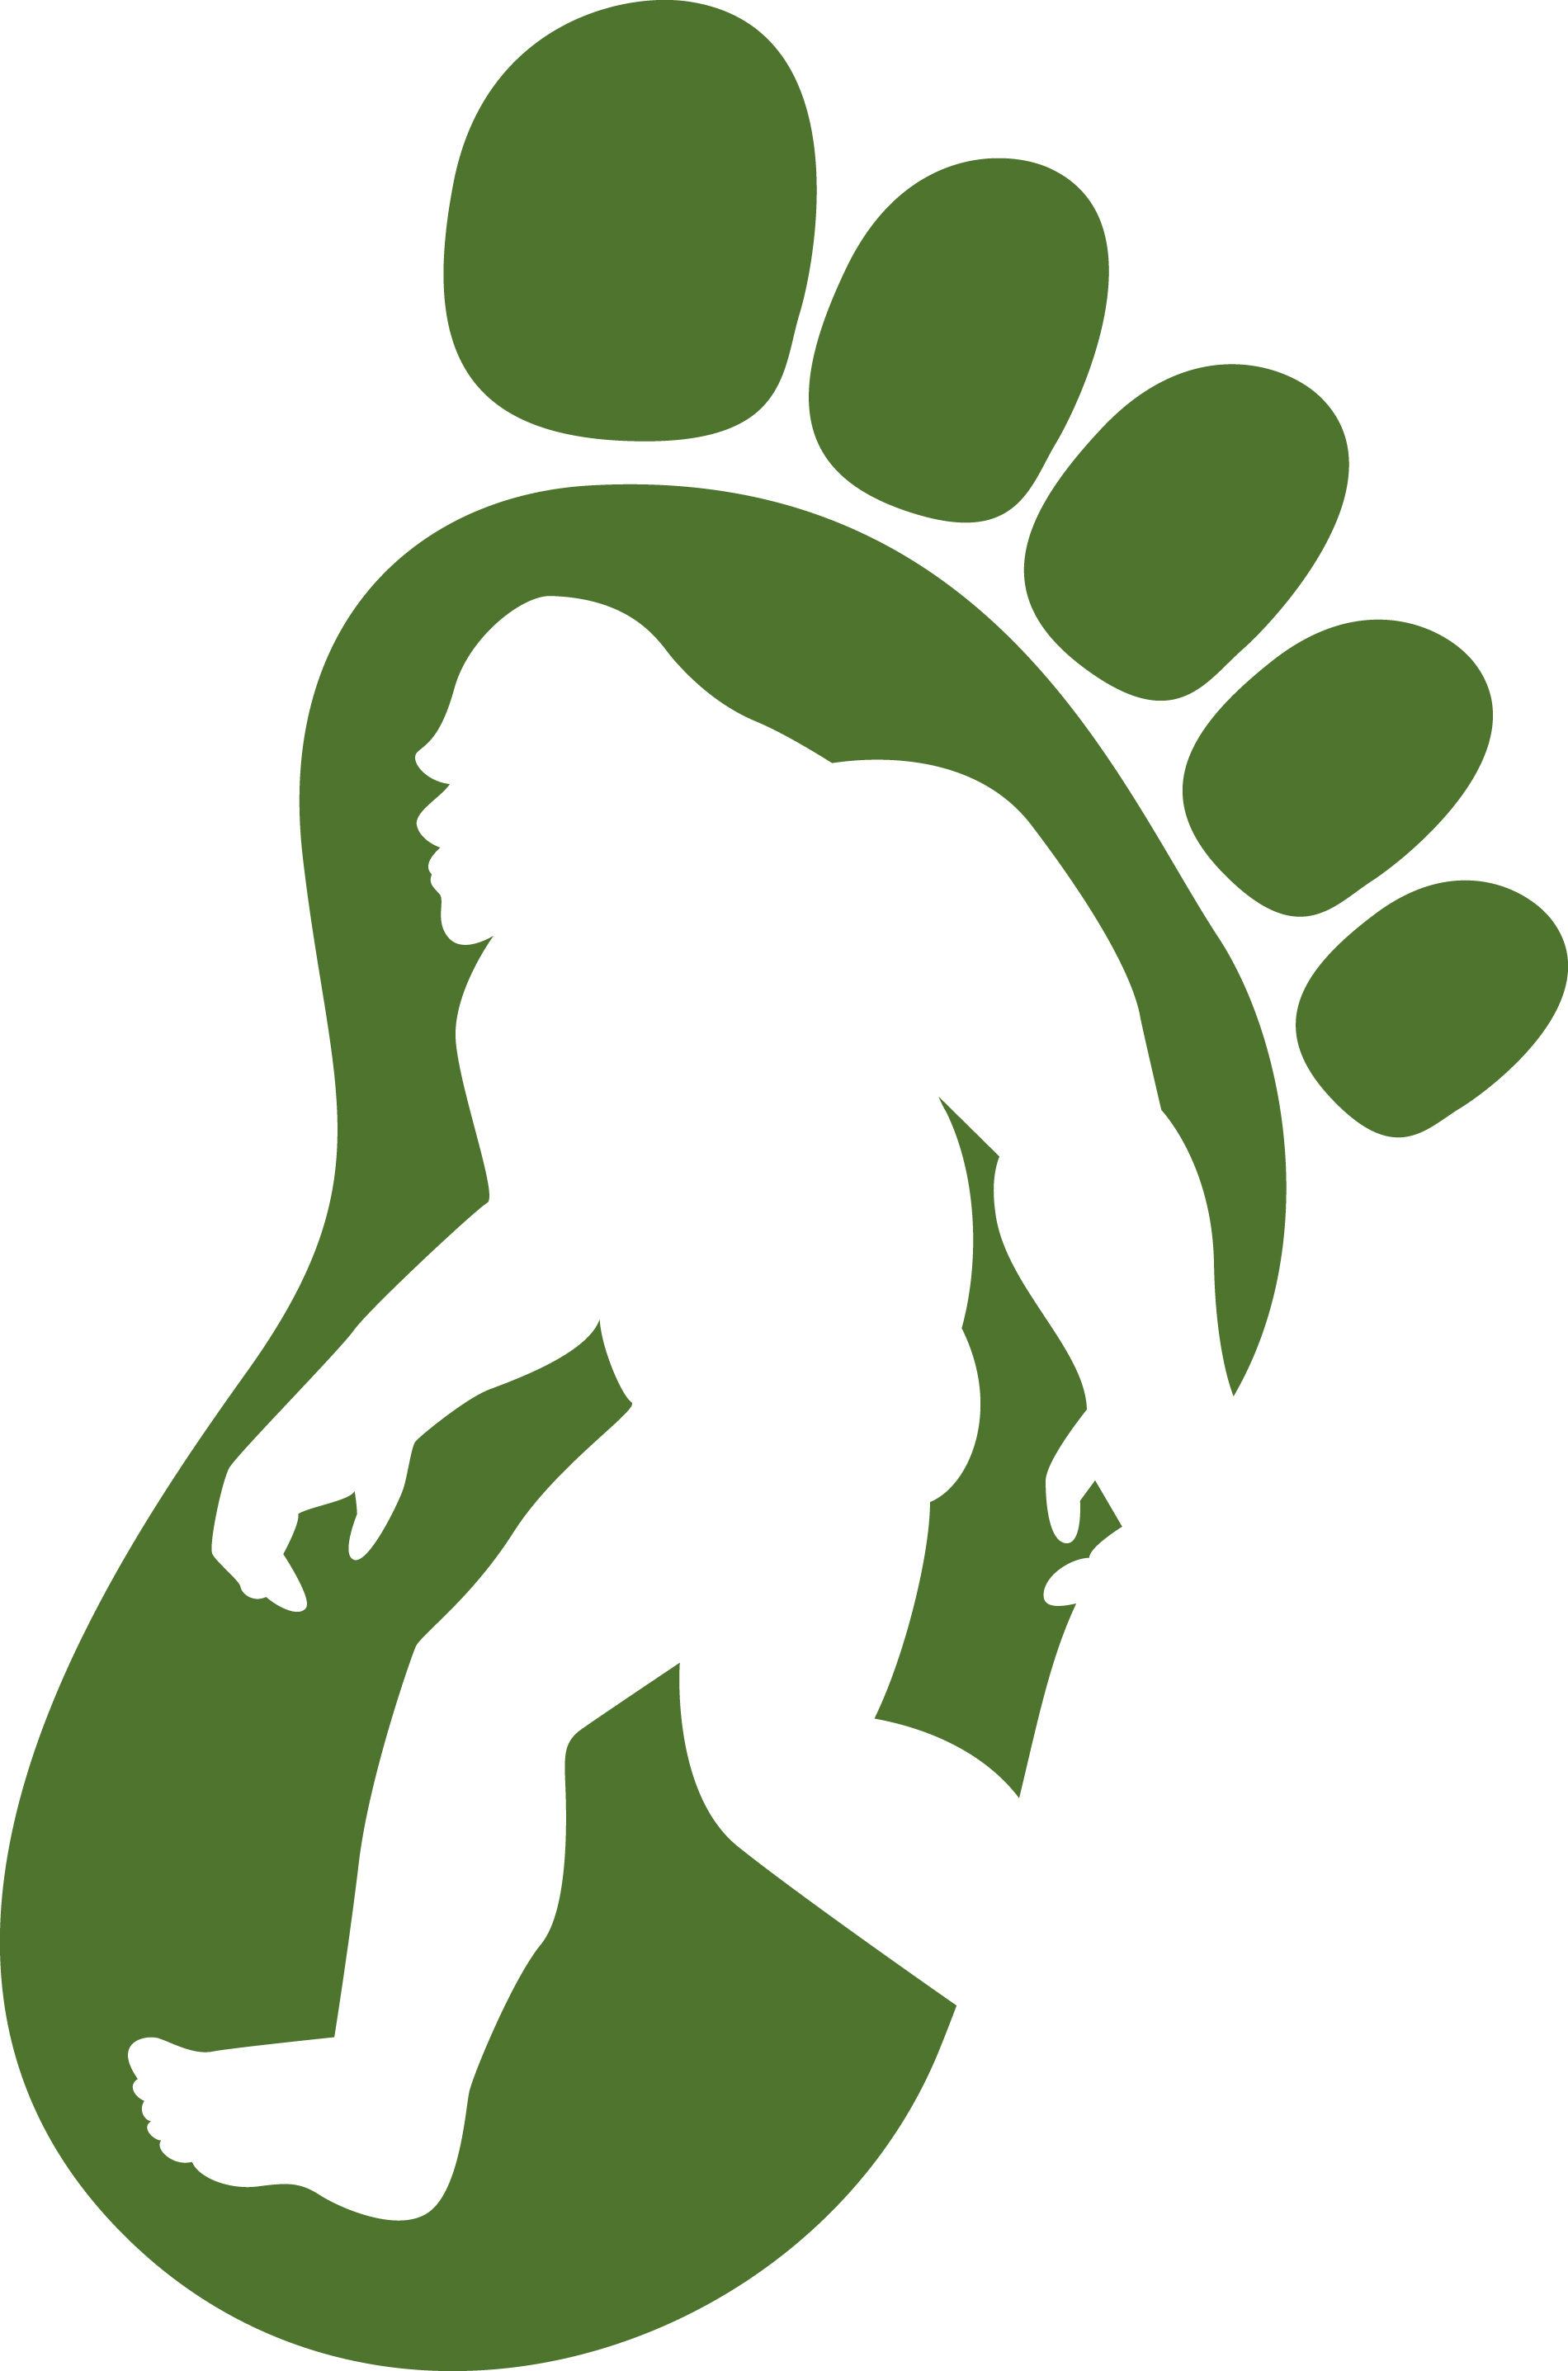 Free cliparts download clip. Bigfoot clipart logo